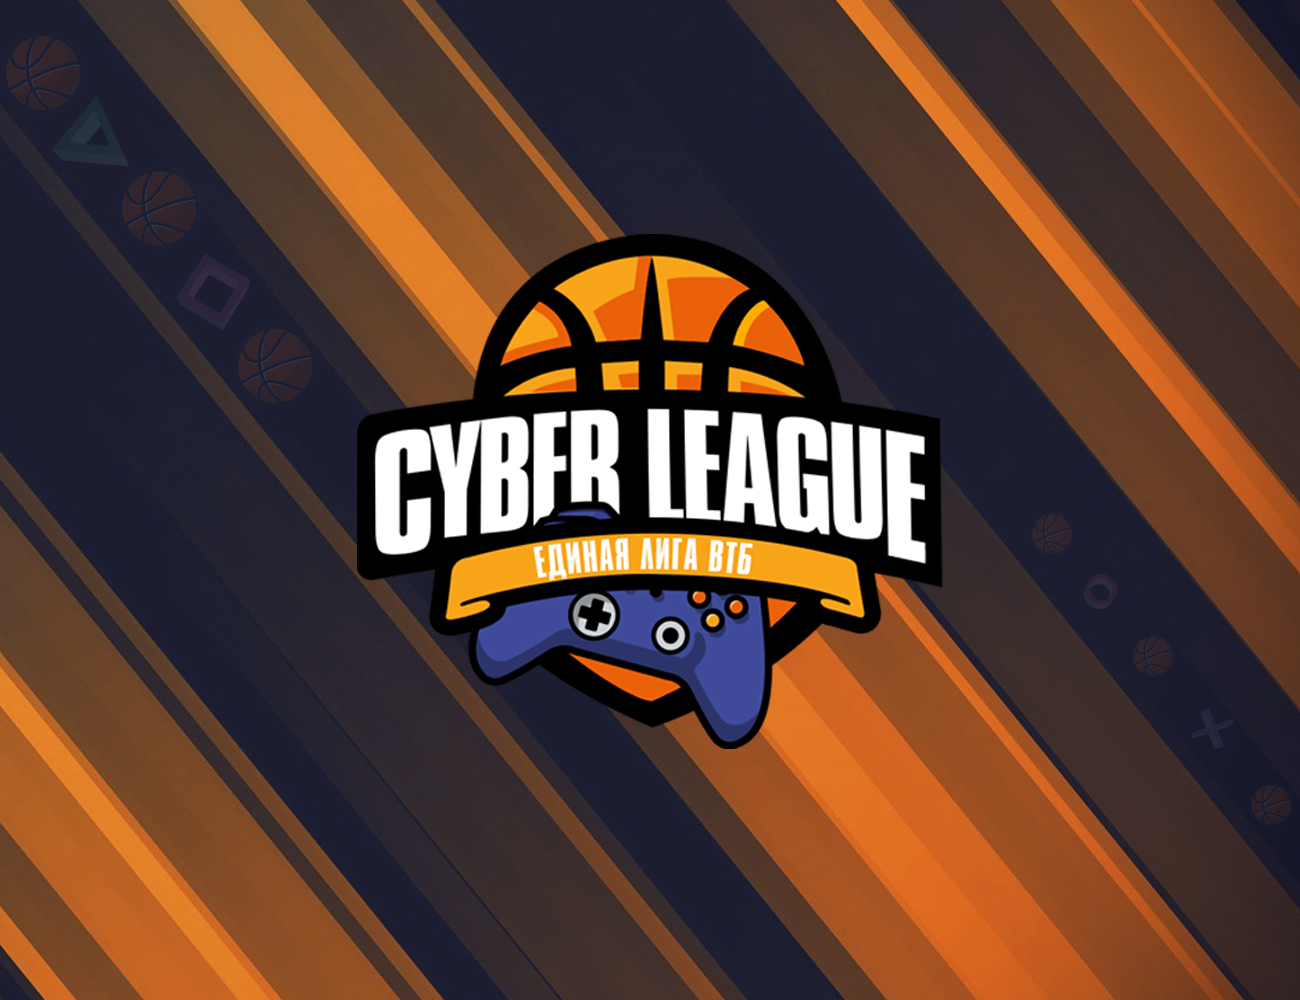 Единая Лига ВТБ запускает киберспортивный турнир Cyber League